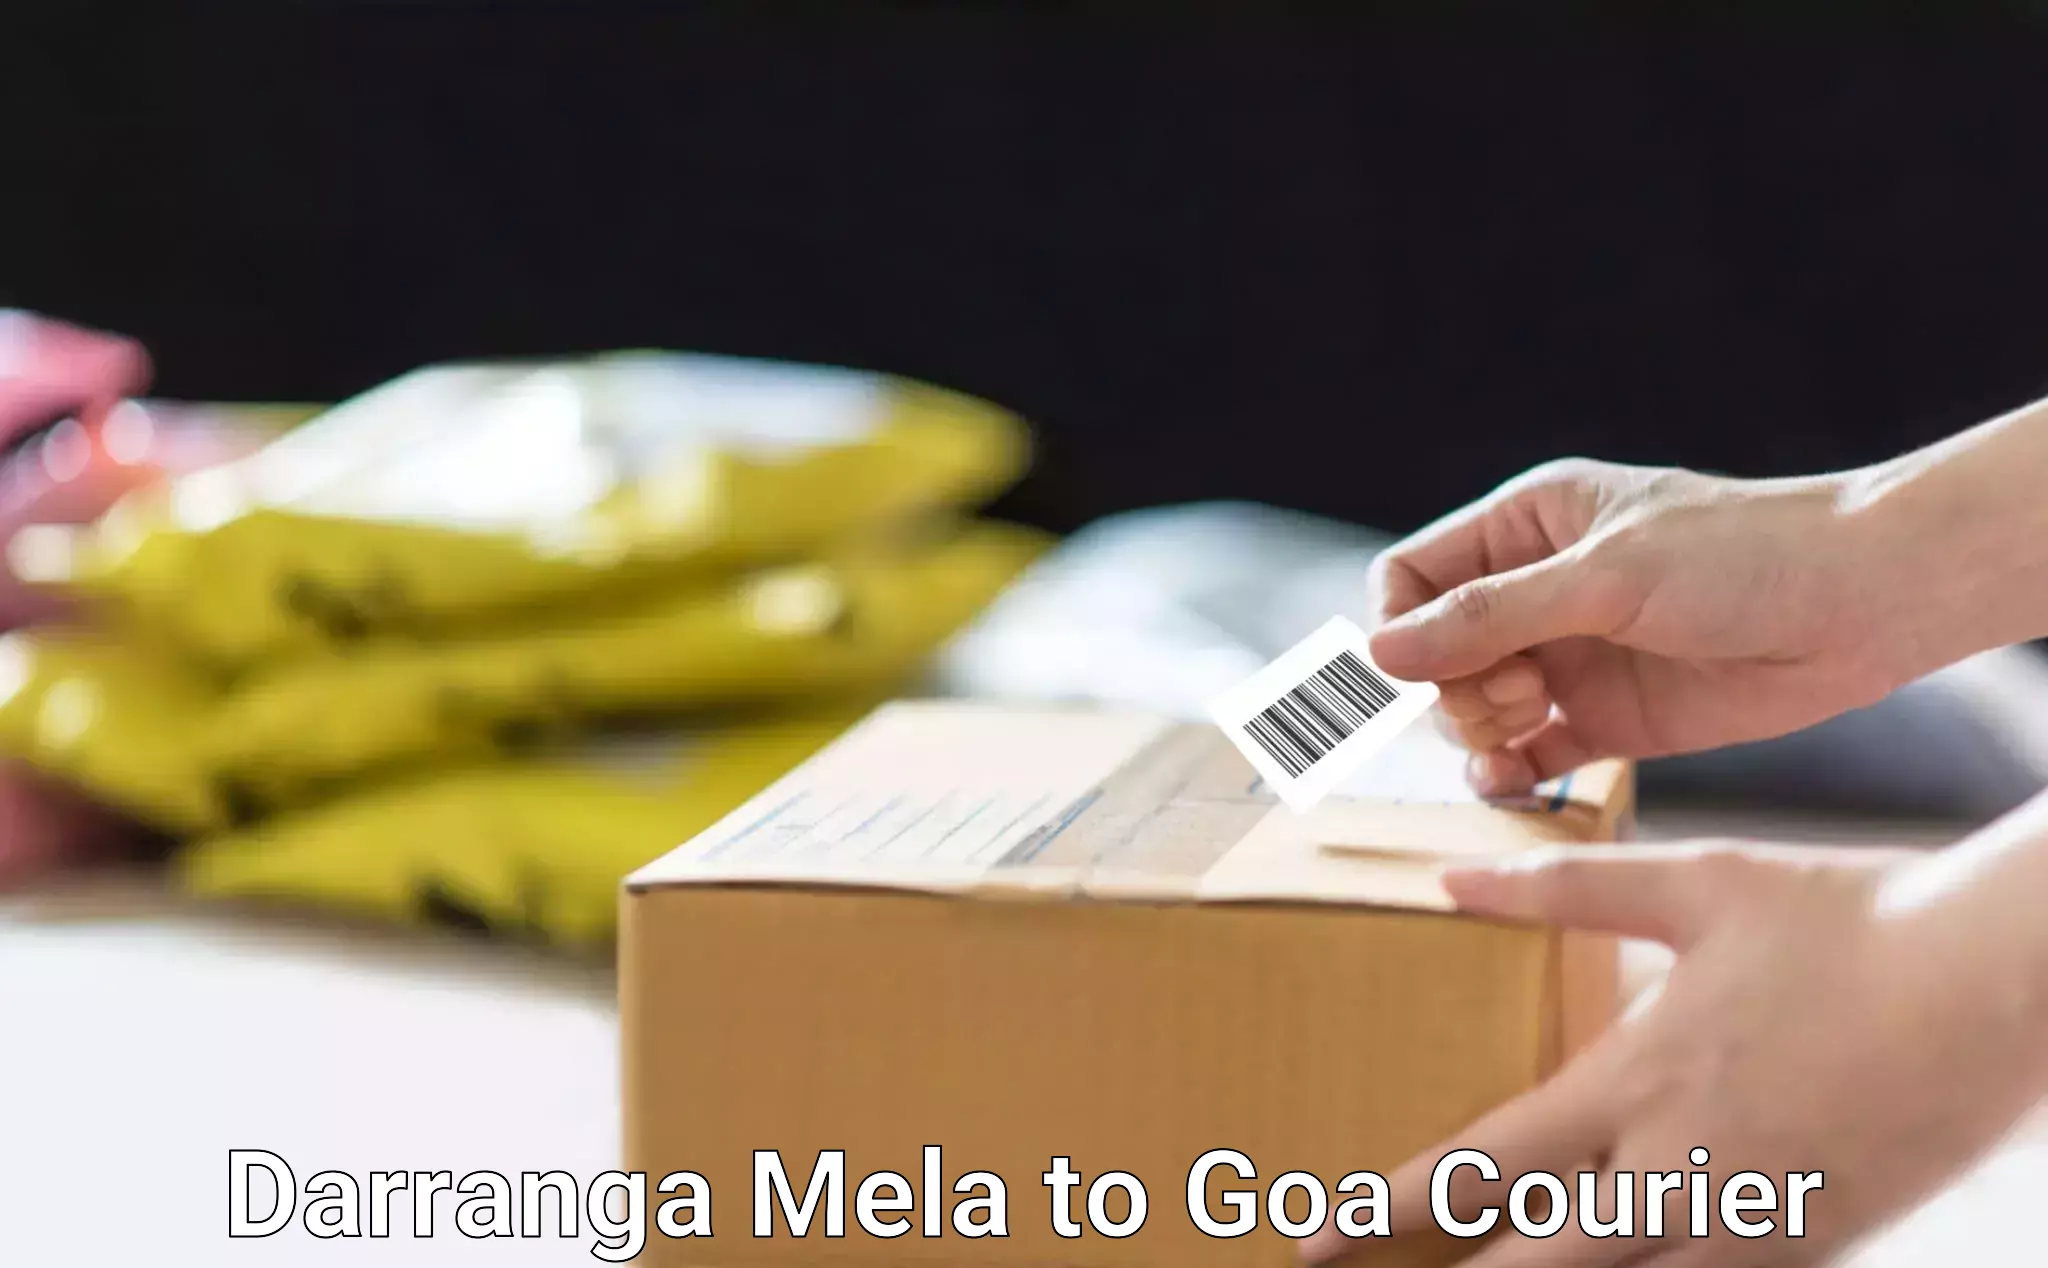 Online courier booking Darranga Mela to Goa